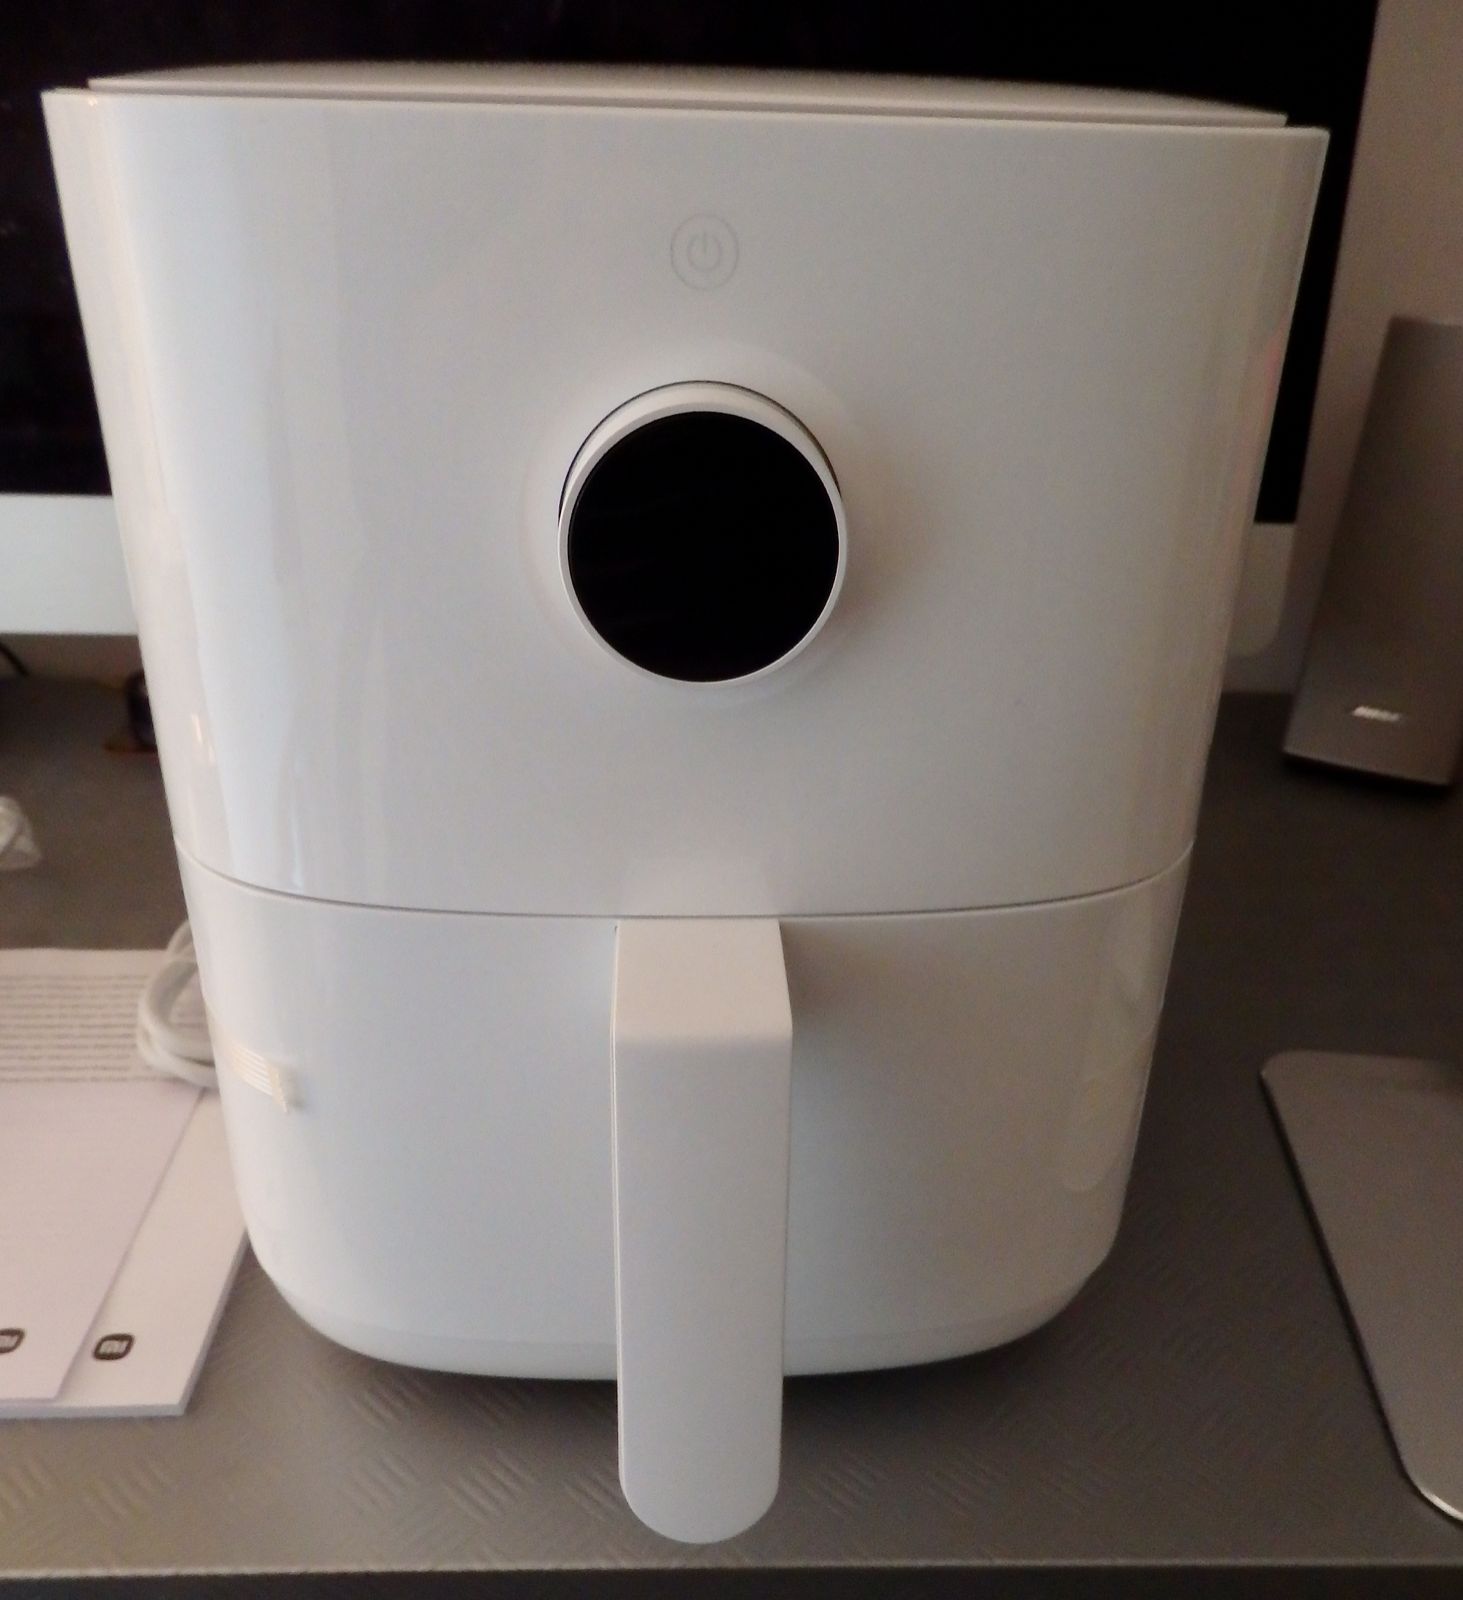 Xiaomi Smart Air Fryer Luftfritteuse Test